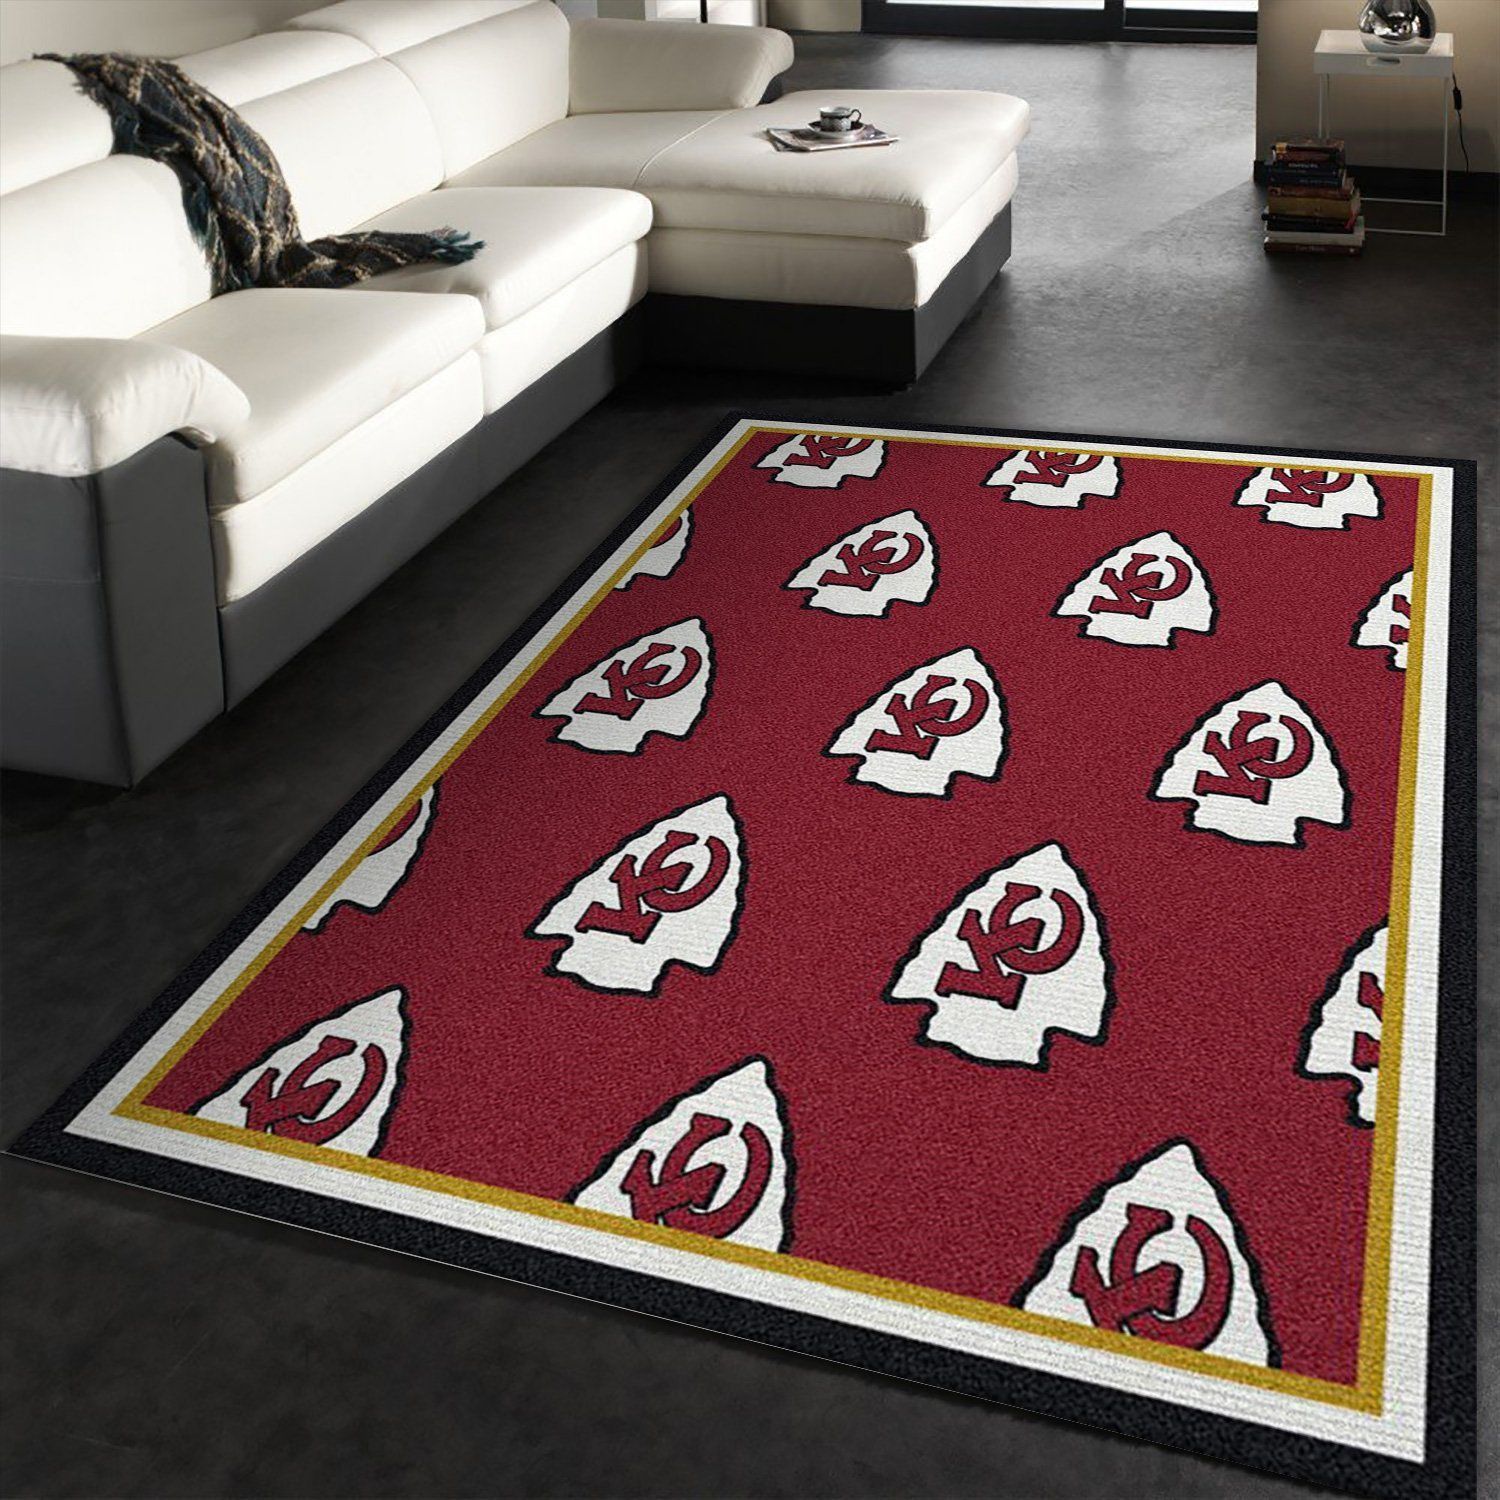 Kansas City Chiefs Repeat Rug Nfl Team Area Rug Carpet